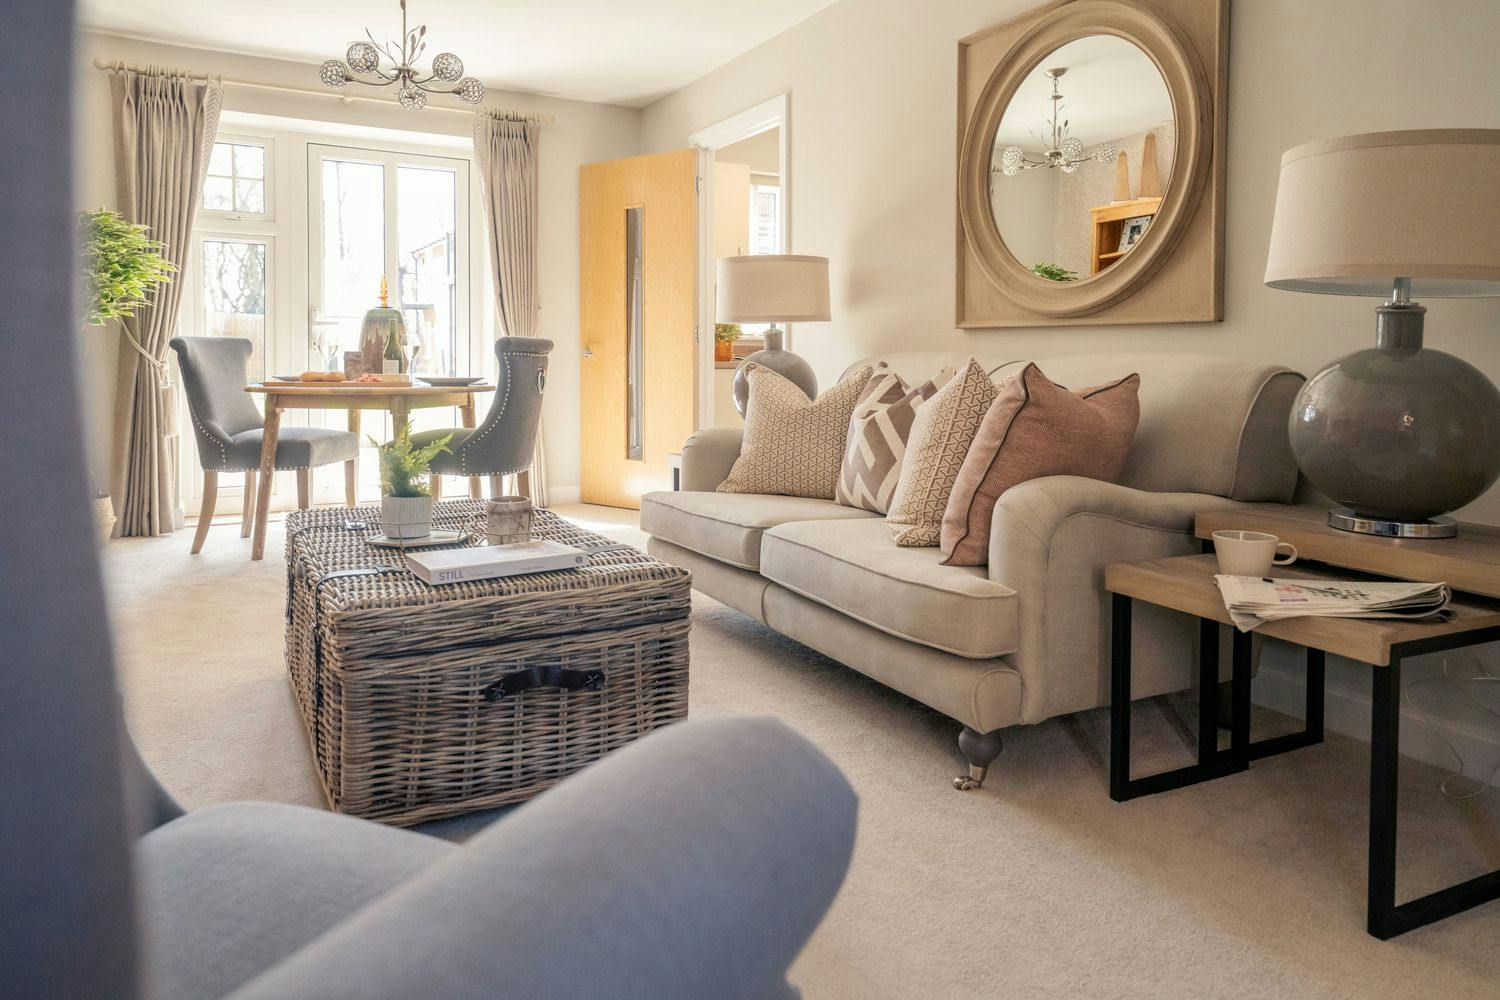 Living Room at Eastland Grange Retirement Development in Hunstanton, Norfolk